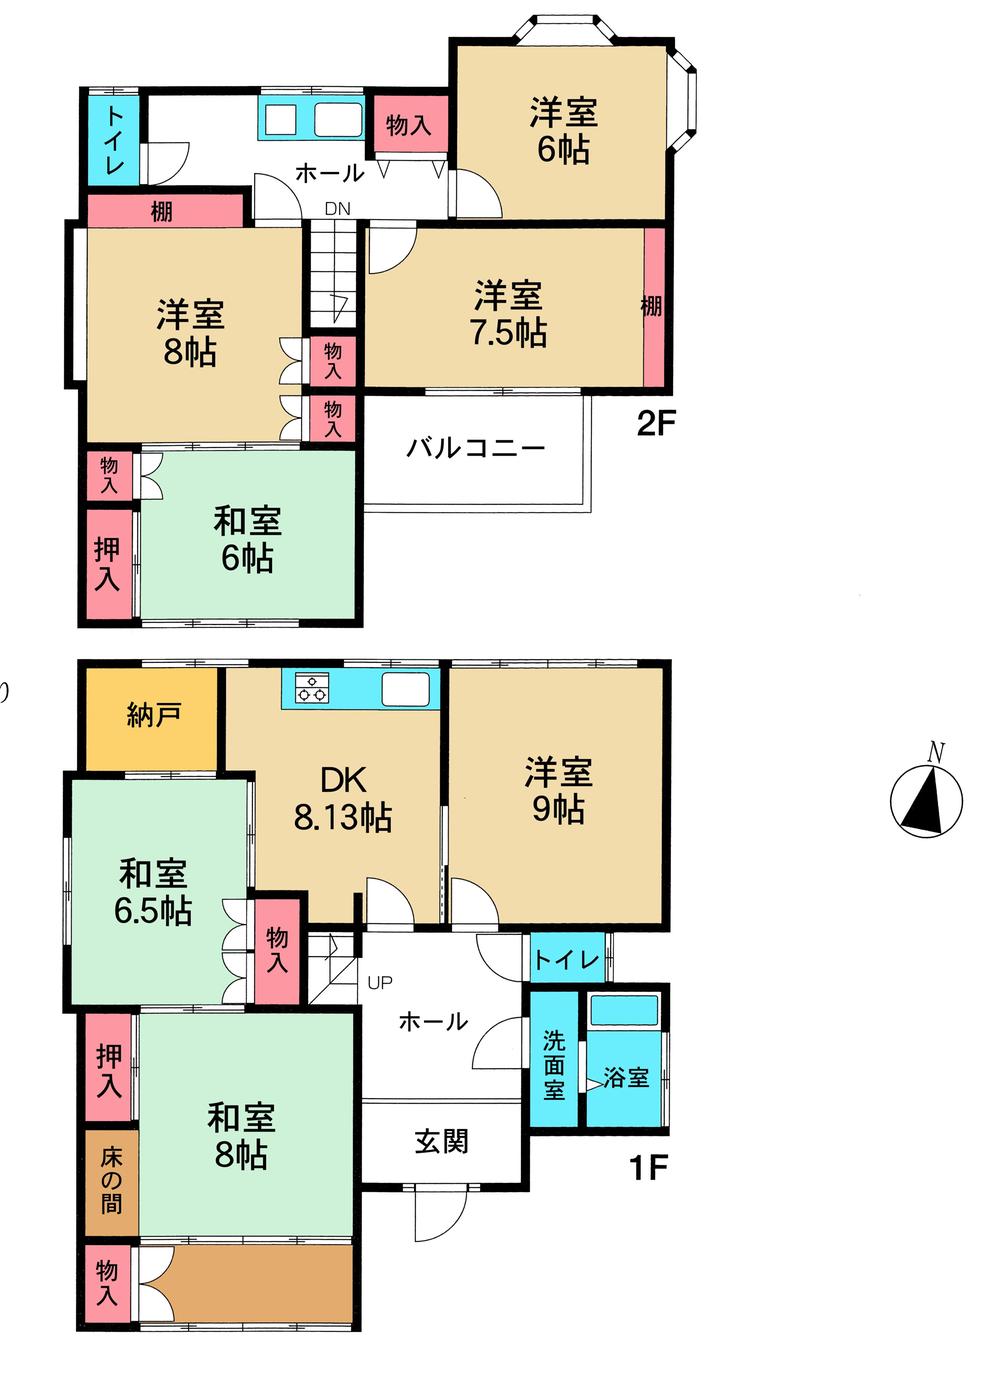 Floor plan. 38,500,000 yen, 7DK + S (storeroom), Land area 190.56 sq m , Building area 144.41 sq m